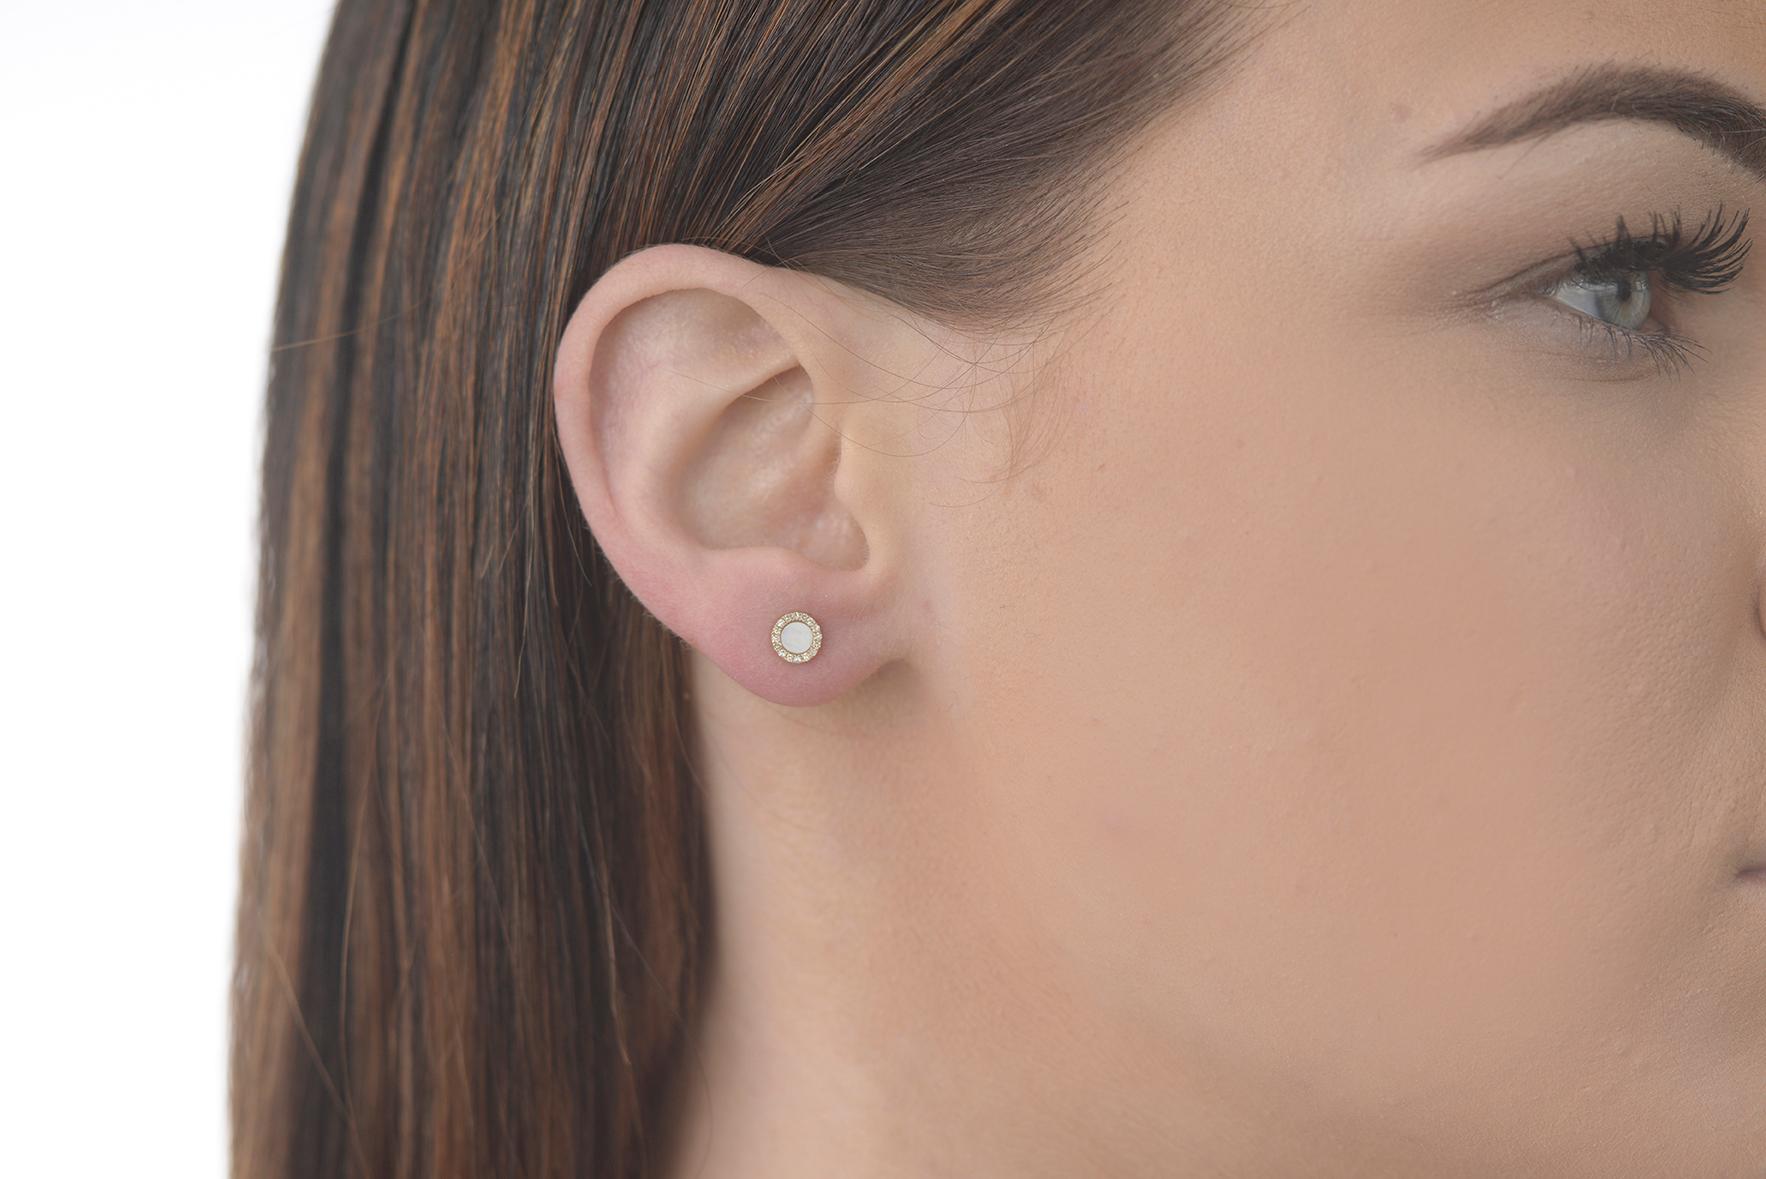 Ohrringe aus Perlmutt und Diamanten in 14 k  gelbgold.

5 mm Durchmesser